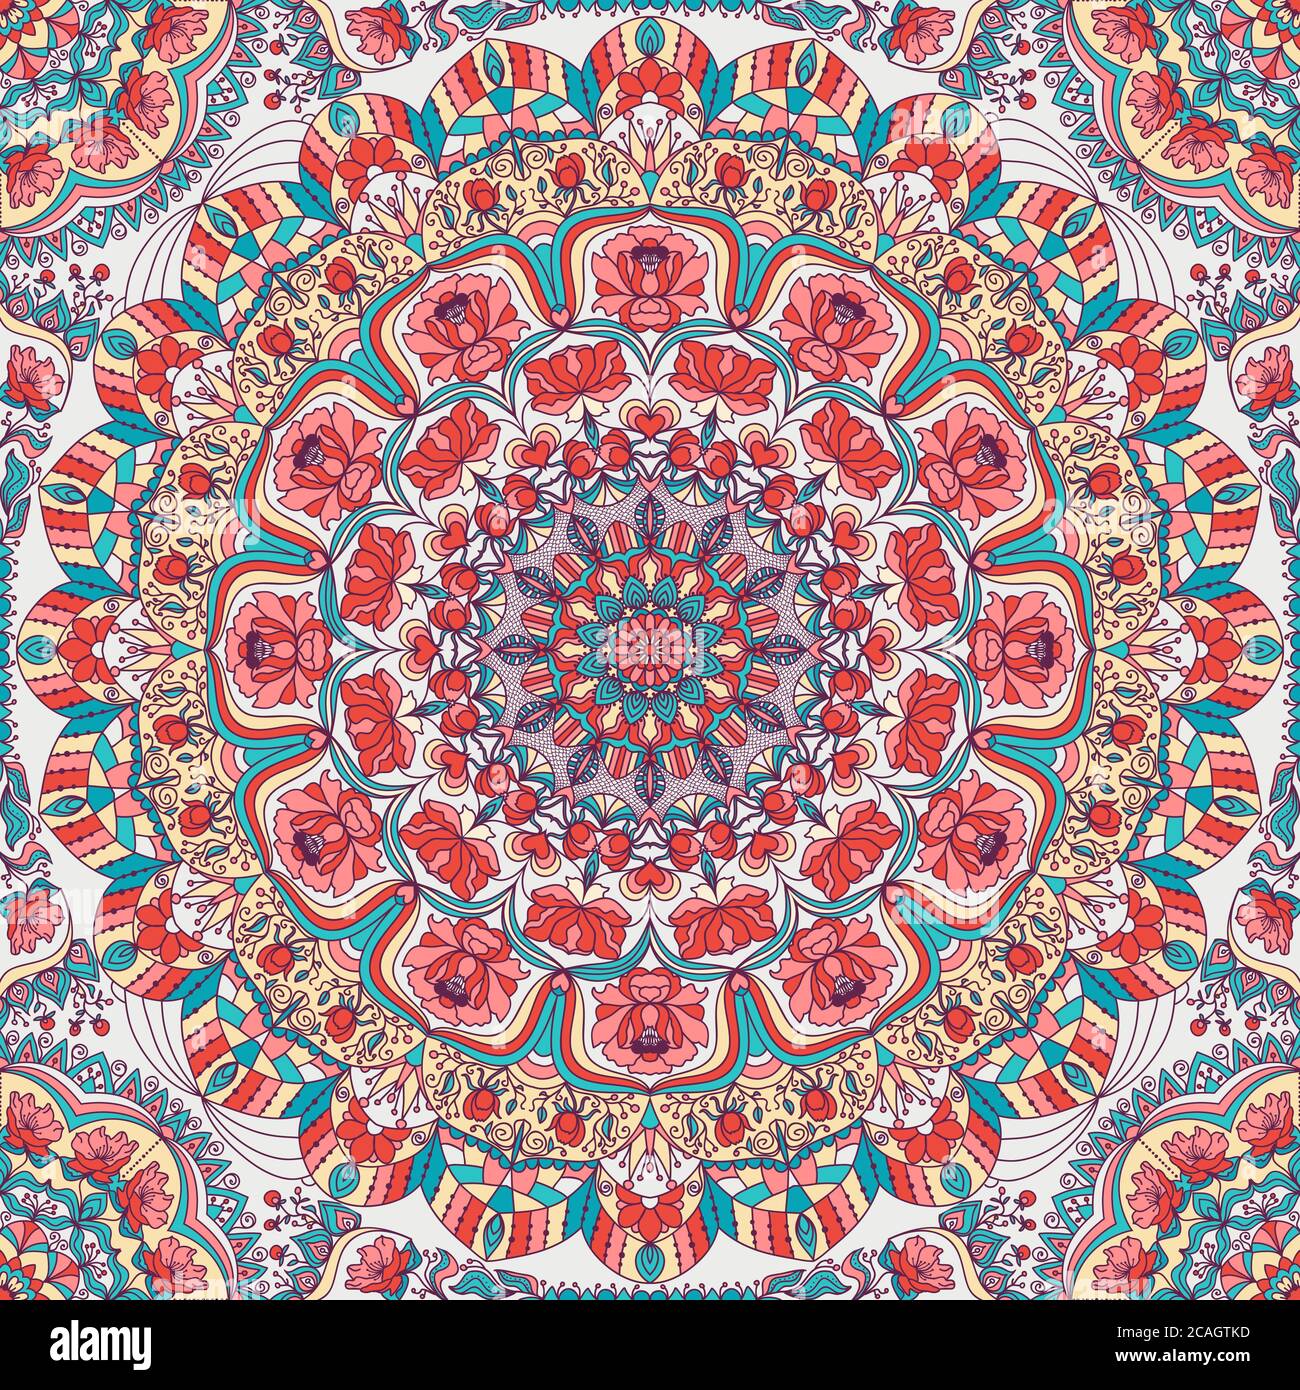 Nahtlose bunte florale handgezeichnete Muster mit Mandala. Kreis Ornament in Retro-Farben. Traditionelles orientalisches Muster. Stockfoto